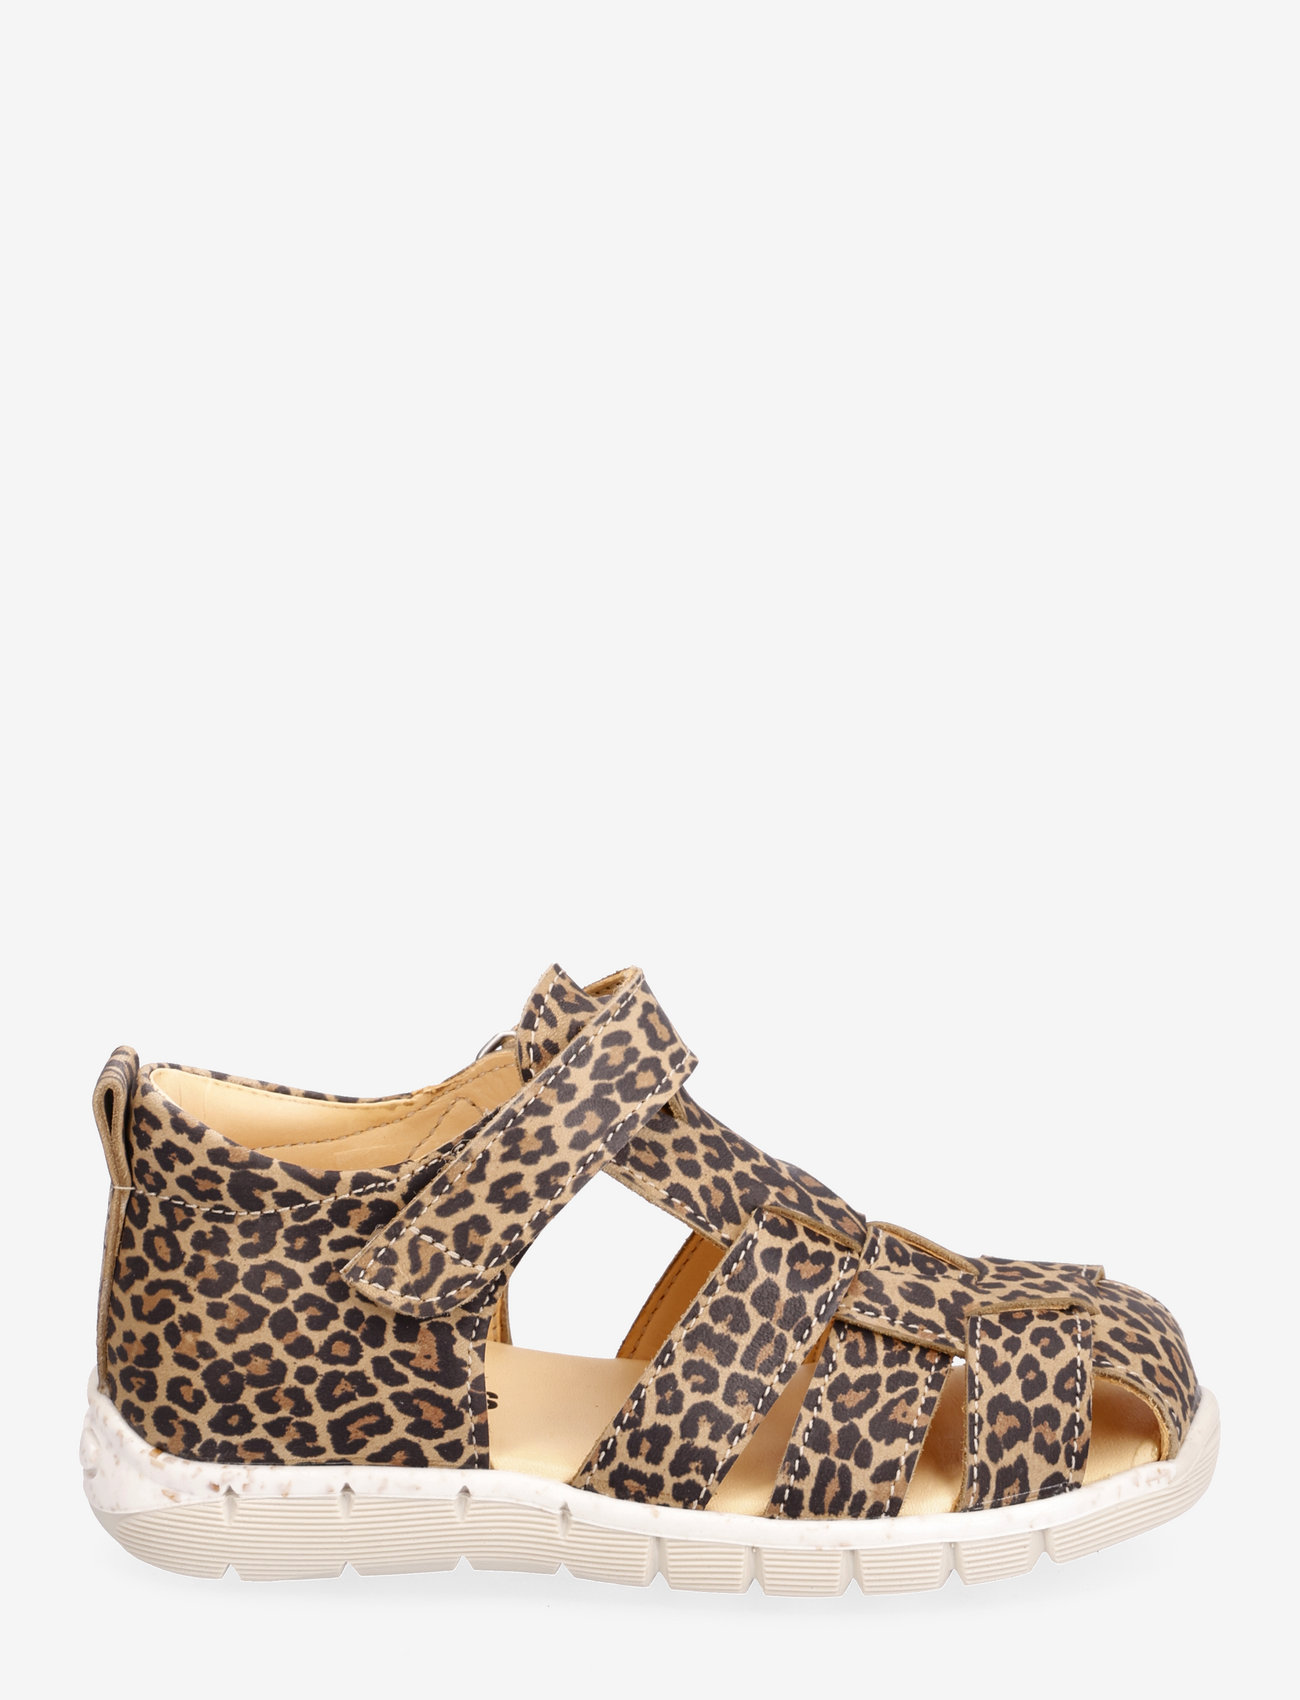 ANGULUS - Sandals - flat - closed toe -  - 2185 leopard - 1